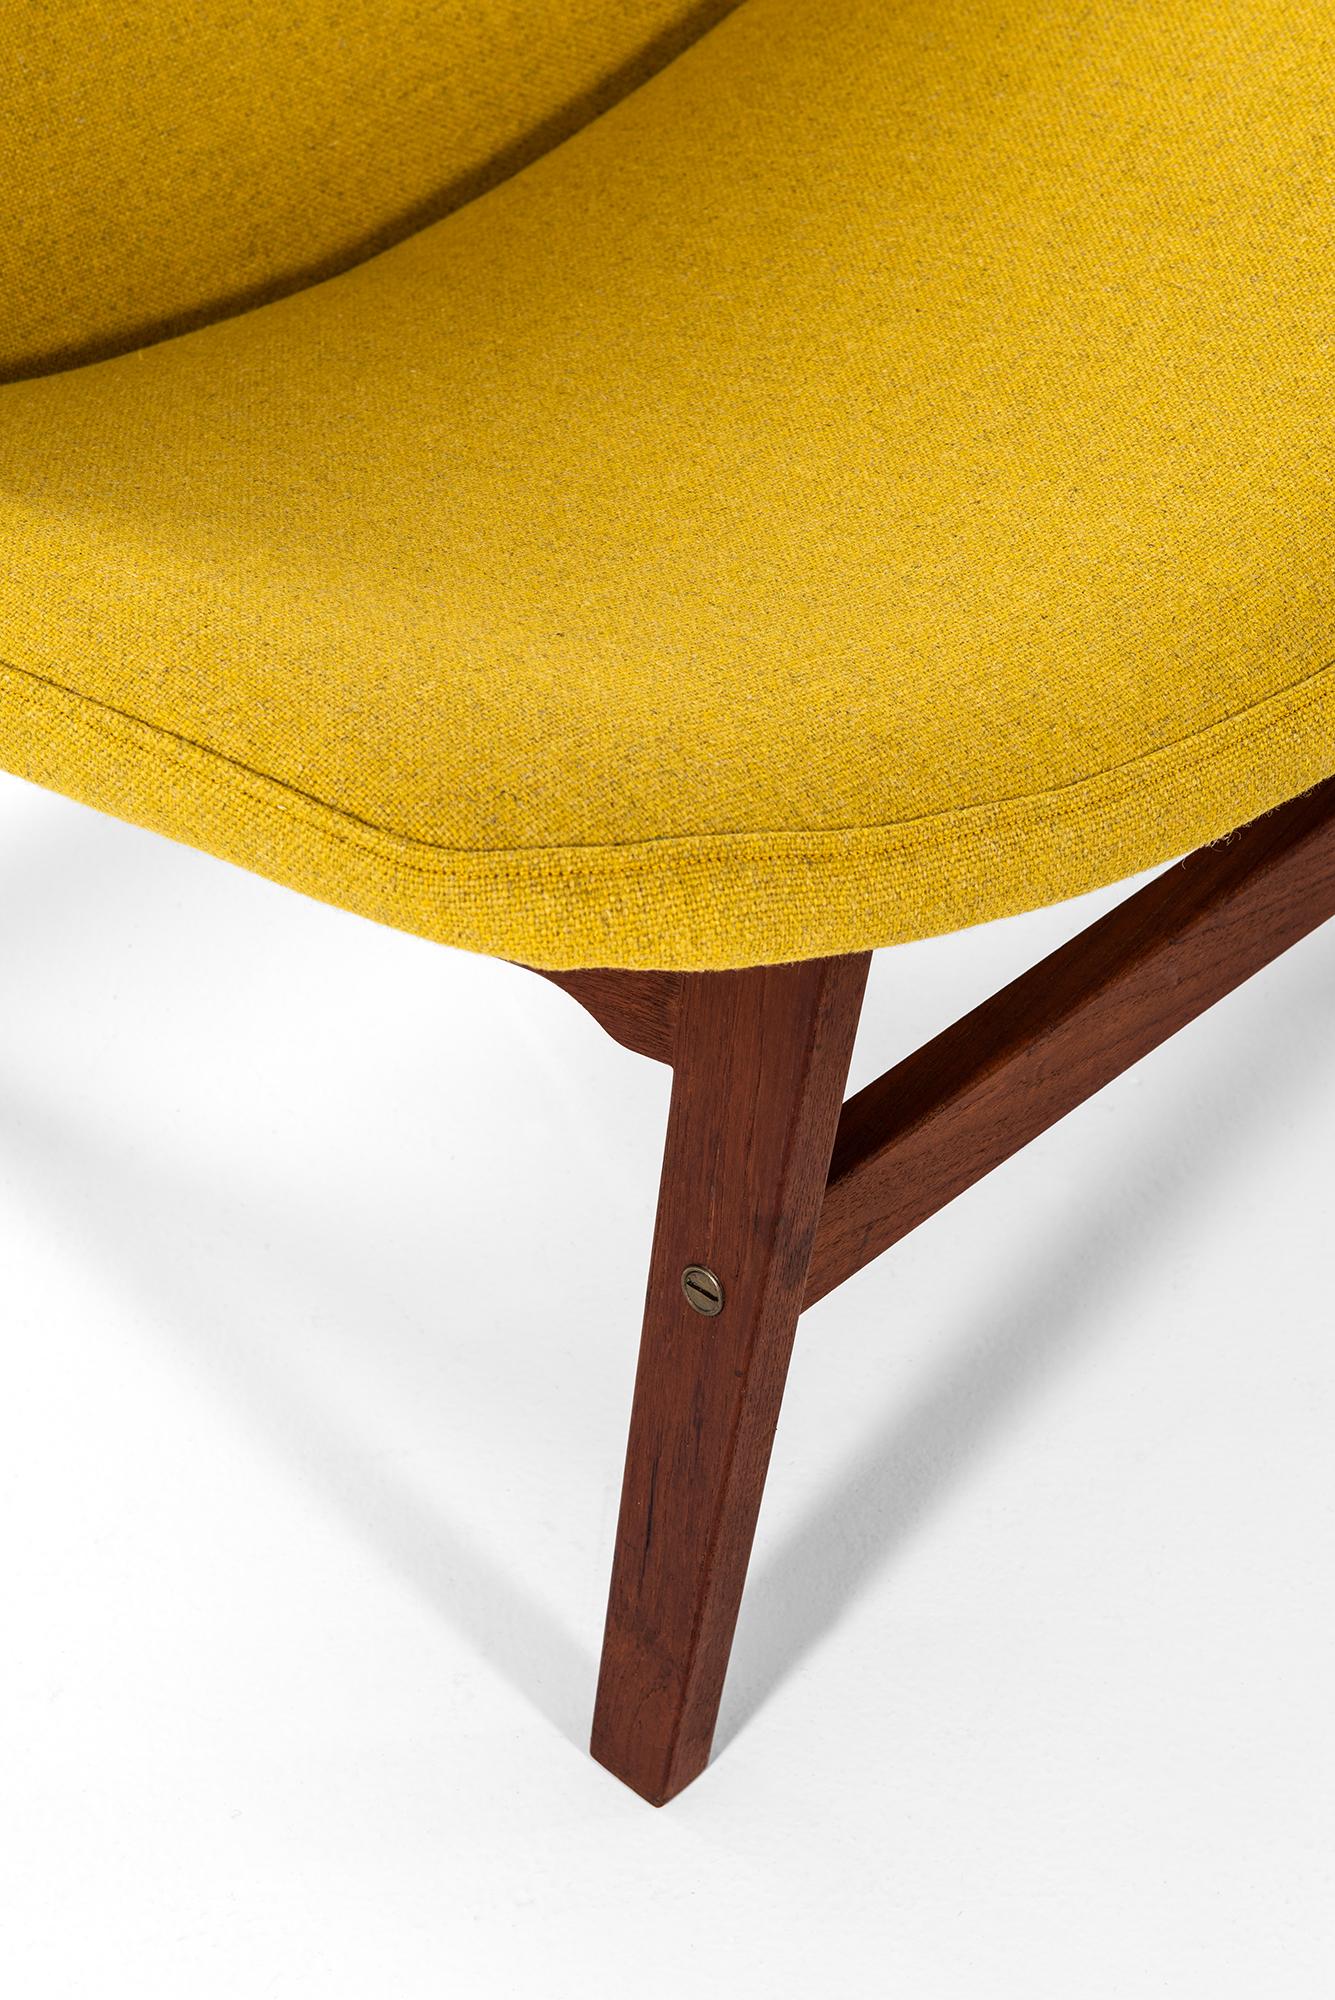 Seltenes Paar Sessel, entworfen von Yngve Ekström. Produziert von ESE-Möbler in Schweden.